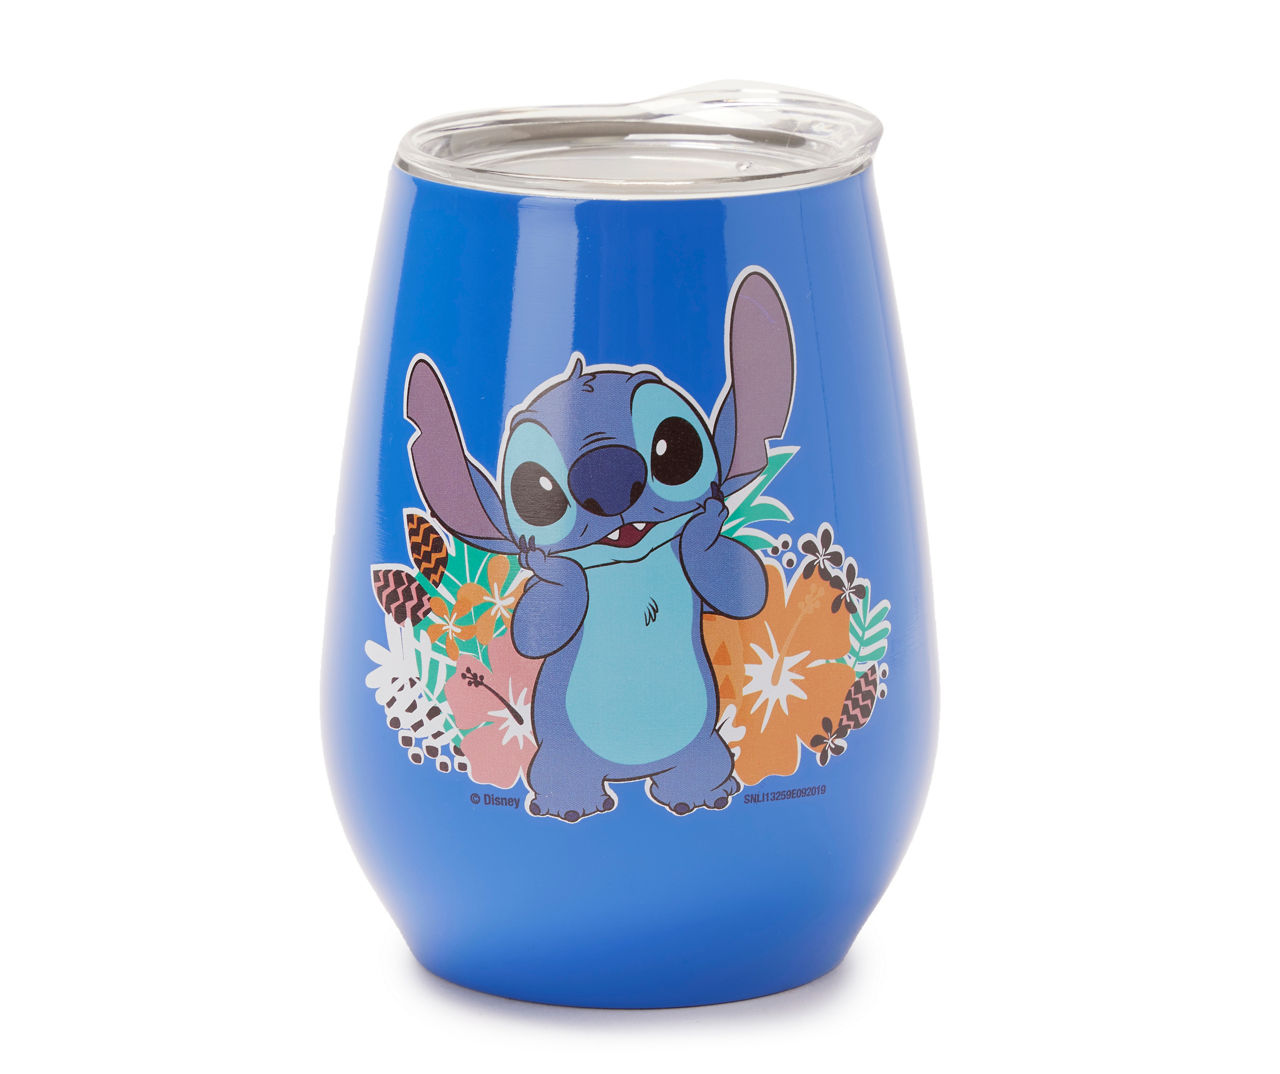 Lilo & Stitch Blue Floral 10oz. Glass Tumbler Set